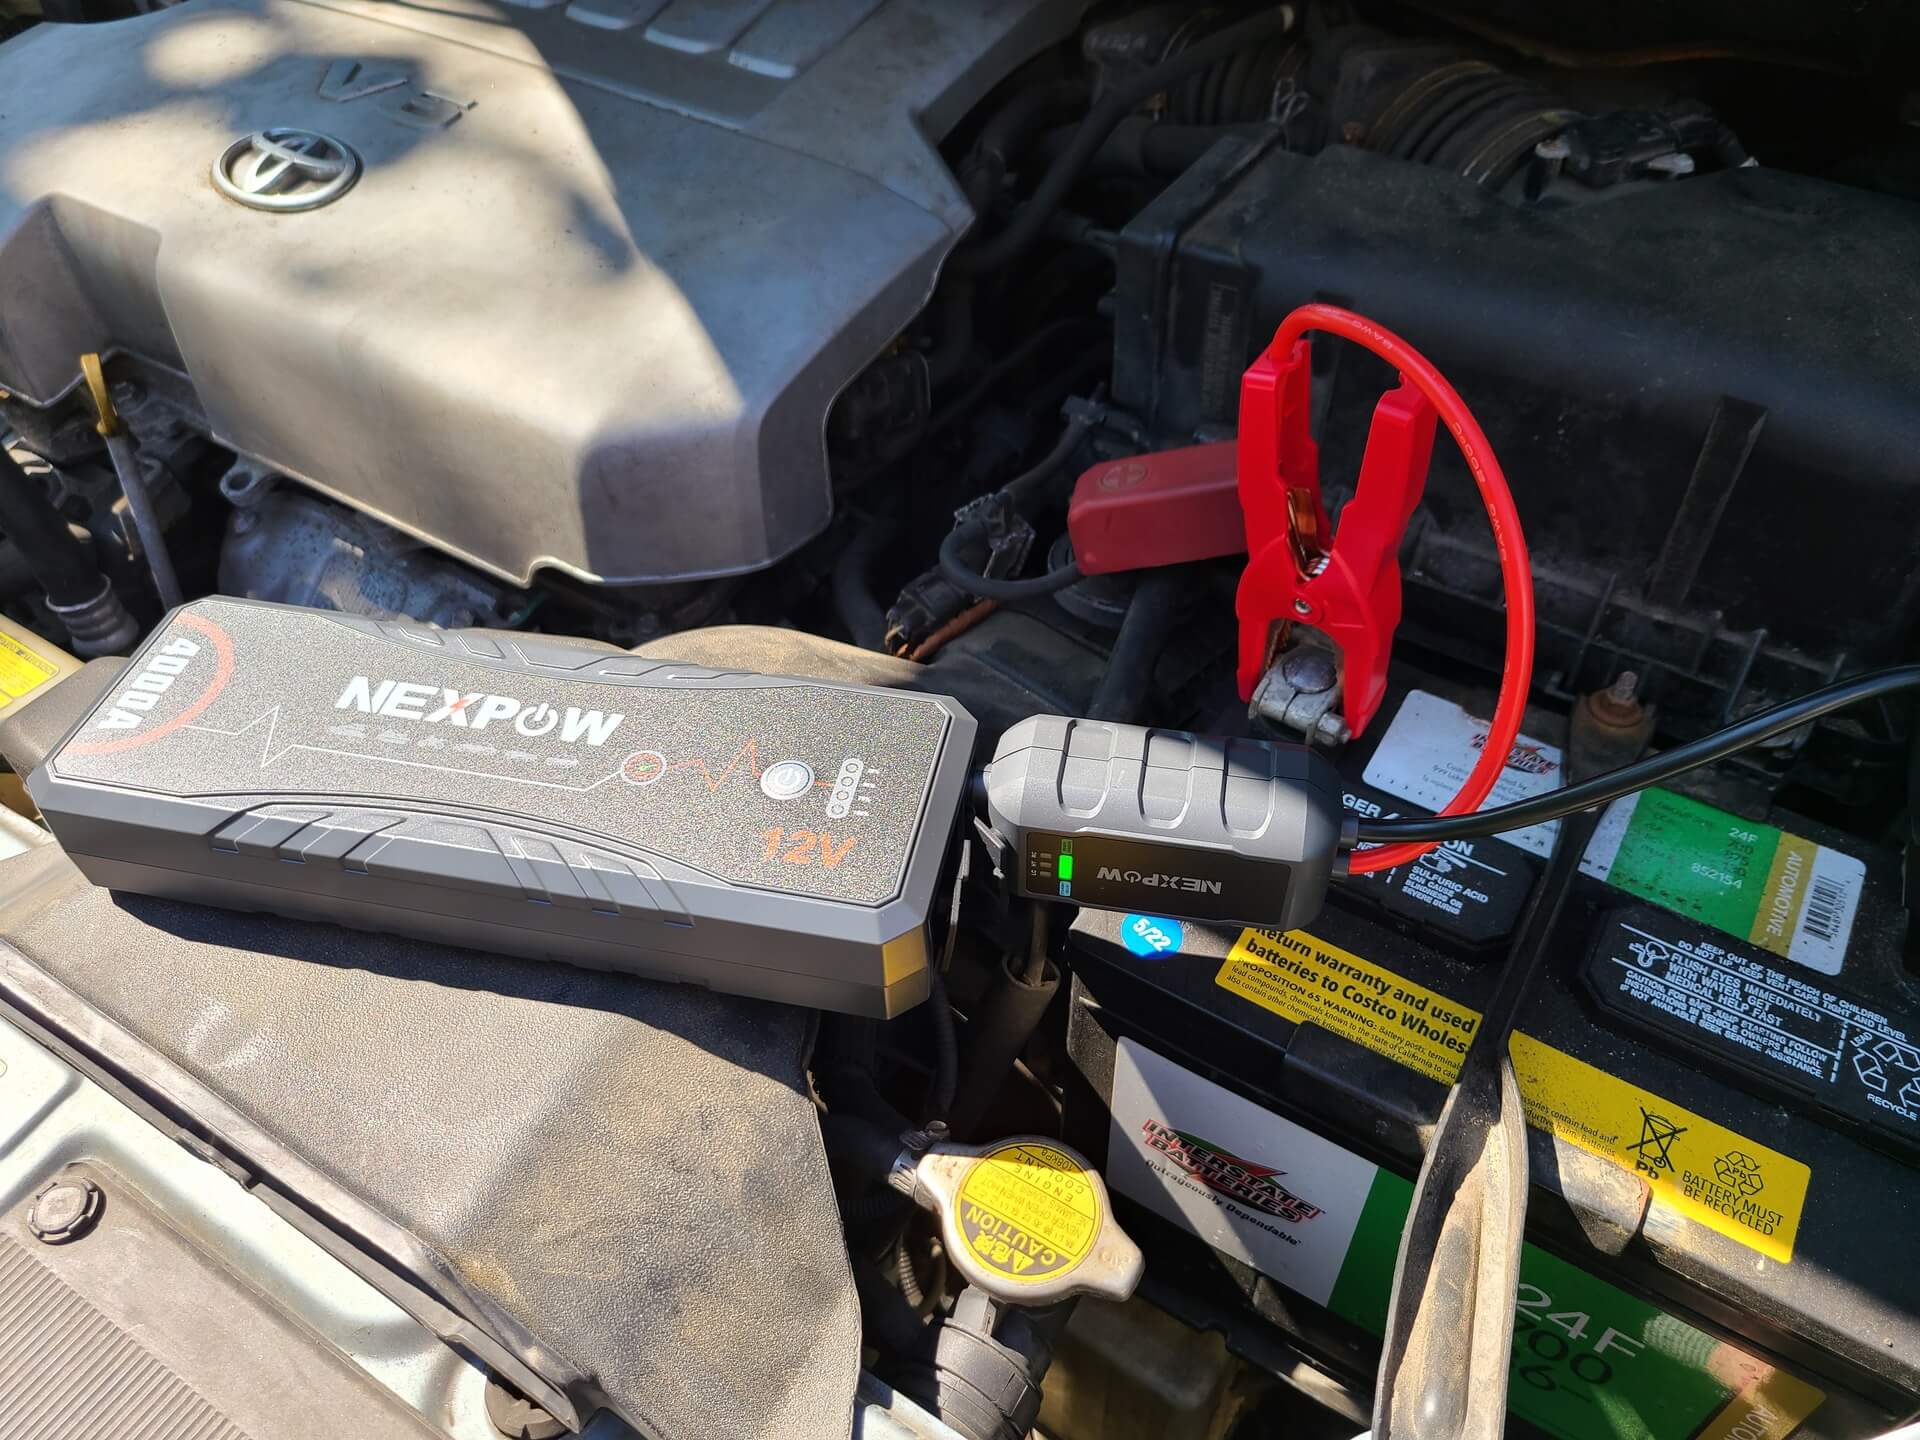 NEXPOW Car Jump Starter,4000A Peak Q11 Battery Jump Starter Pack